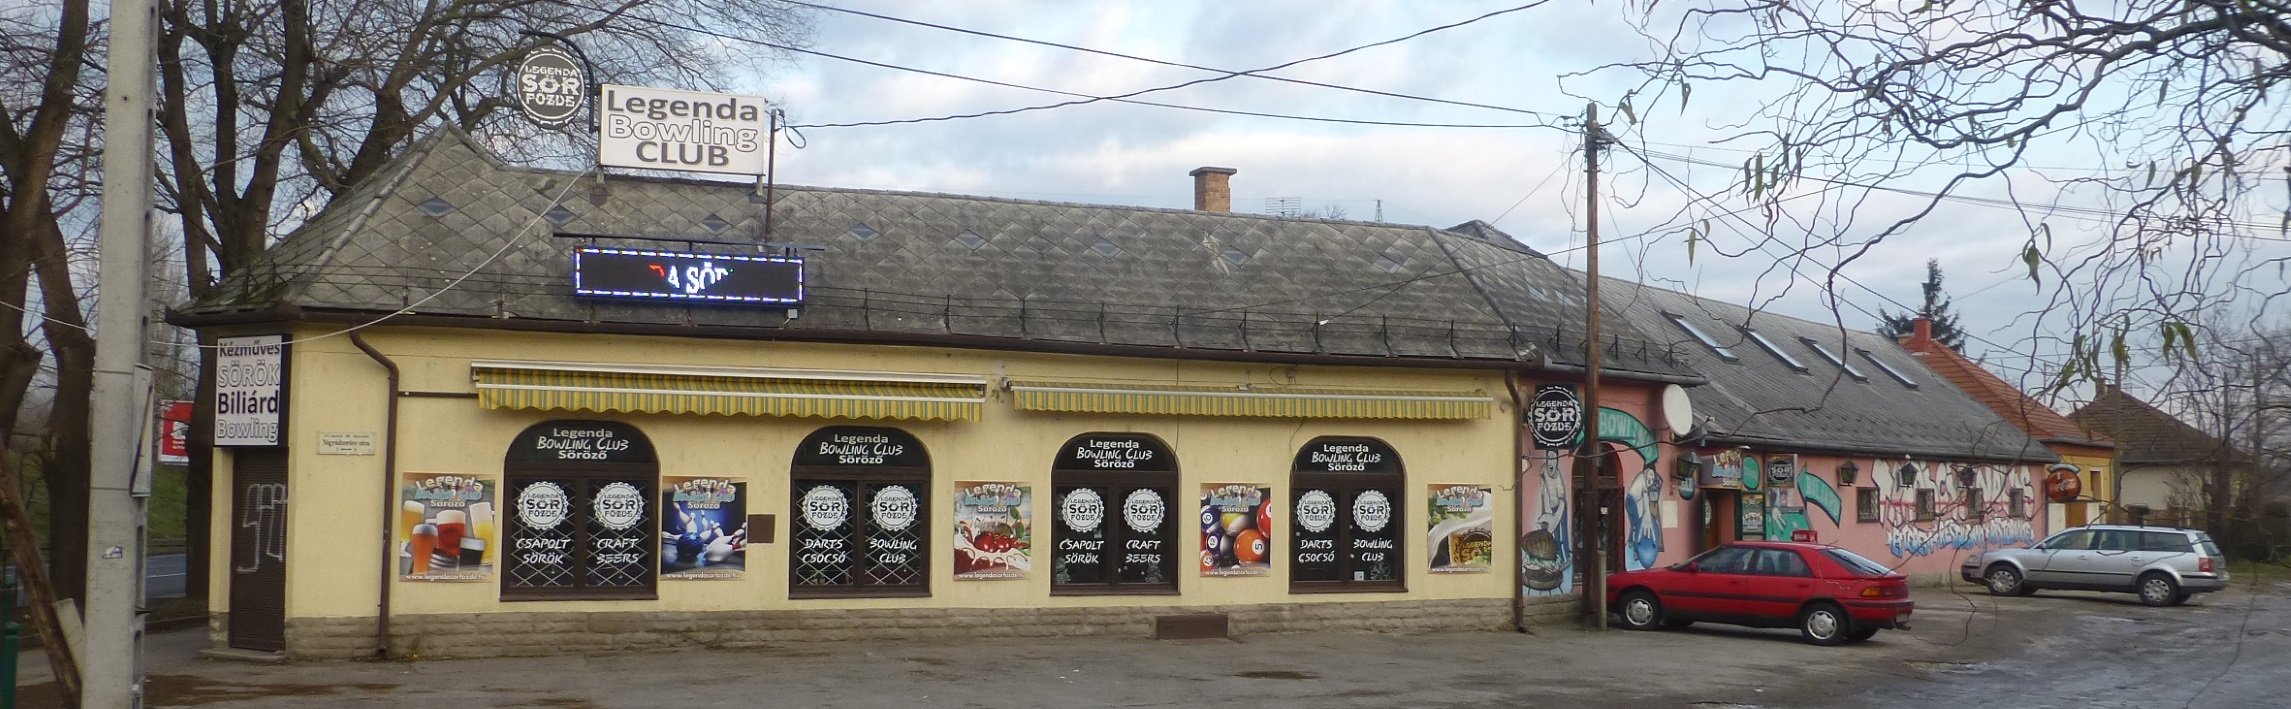 Legenda Bowling Club, Budapest, Bier in Ungarn, Bier vor Ort, Bierreisen, Craft Beer, Bierbar